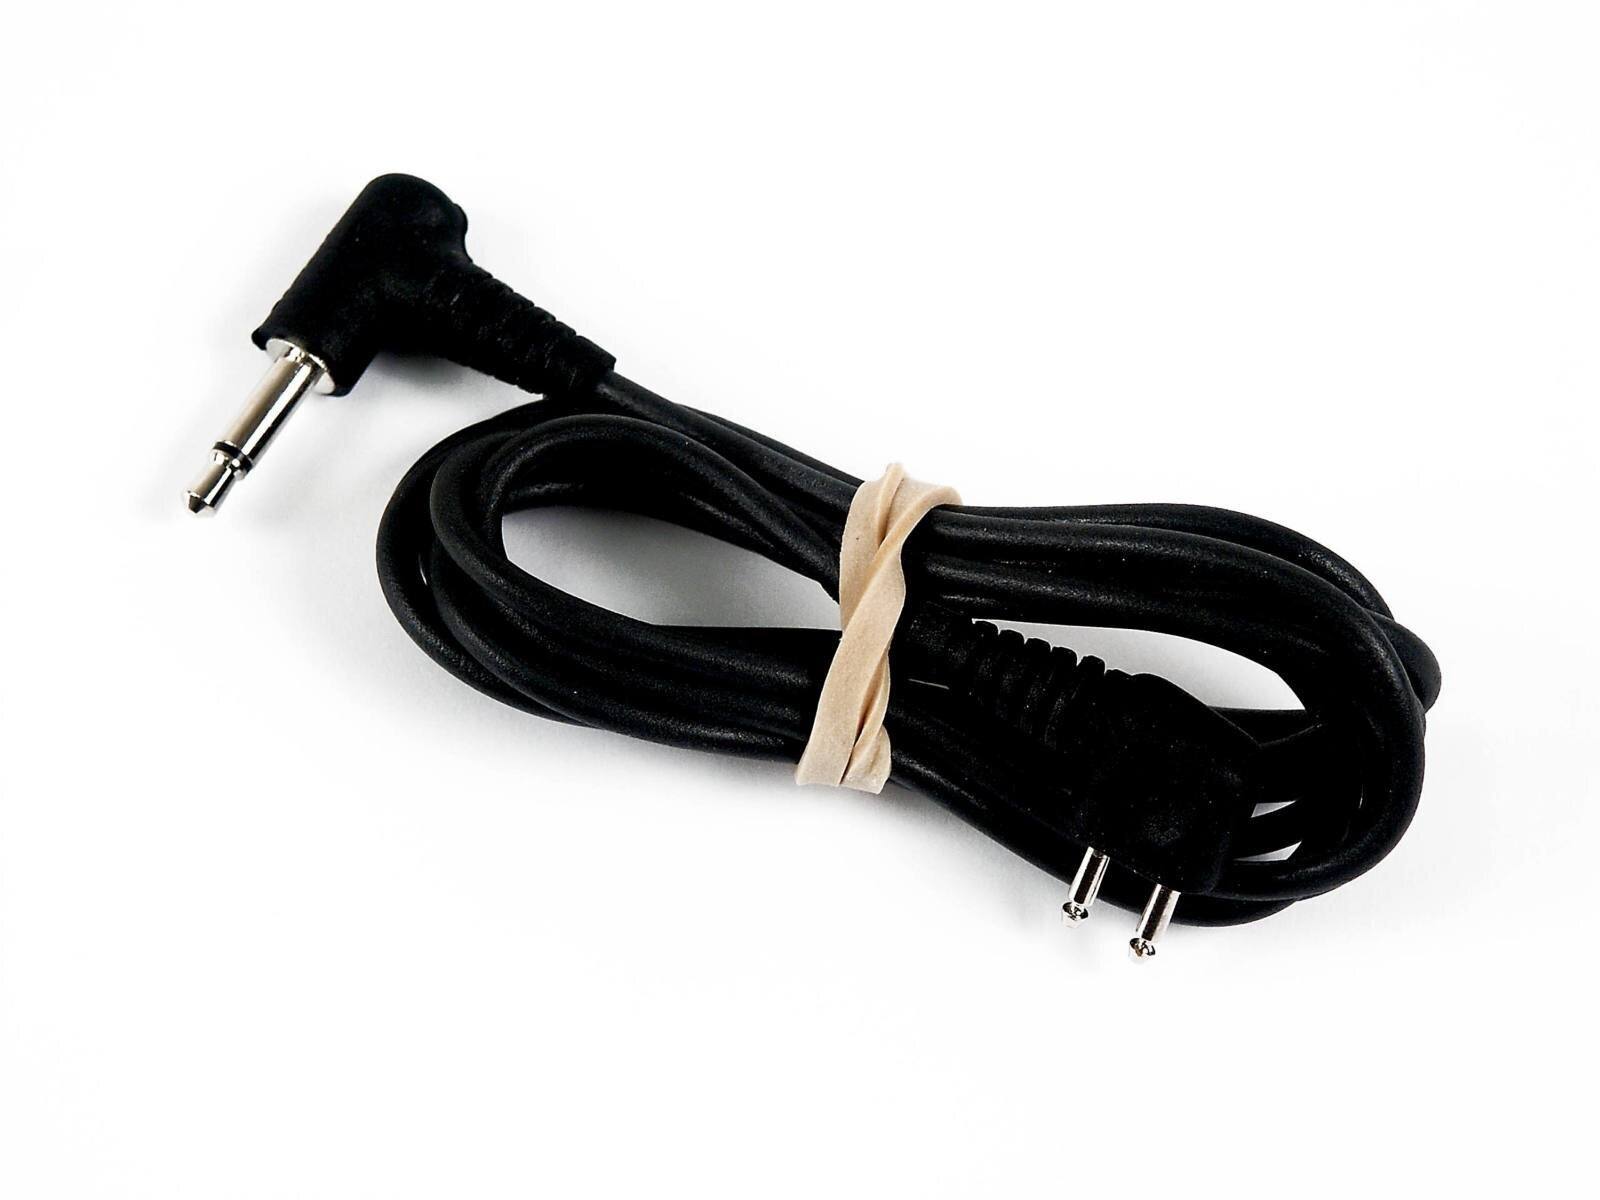 3M PELTOR Flex cable for Sepura STP8, FL6U-101